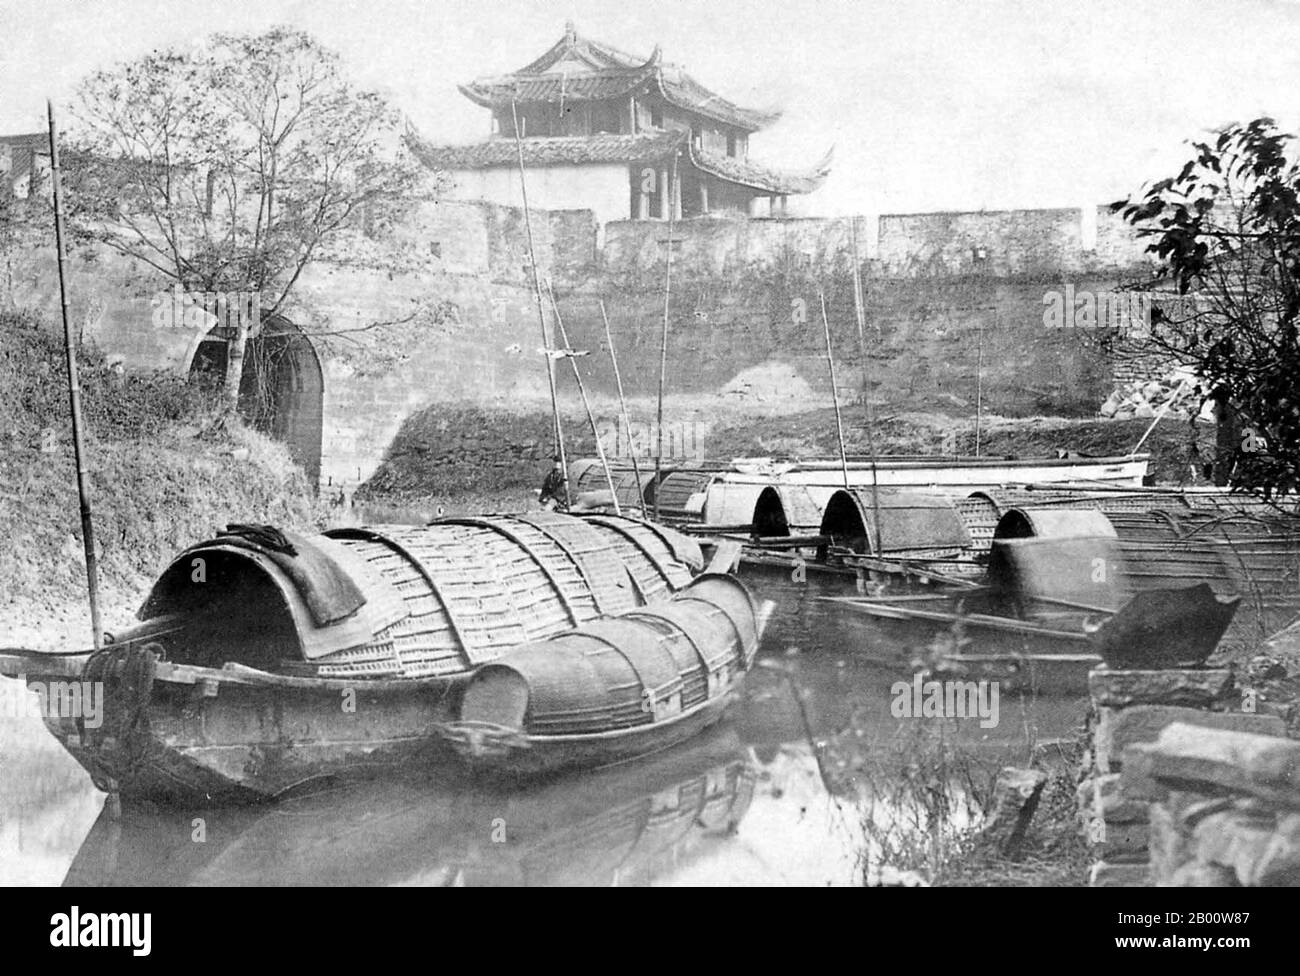 Cina: Barche coperte da Shanghai City Wall, West Gate area, 1890. L'attenzione internazionale a Shanghai è cresciuta nel 19 ° secolo a causa del suo potenziale economico e commerciale sul fiume Yangtze. Durante la prima guerra dell'Opium (1839-1842), le forze britanniche temporaneamente detenevano la città. La guerra si è conclusa con il Trattato di Nanjing del 1842, aprendo Shanghai e altri porti al commercio internazionale. Nel 1863, l'insediamento britannico, situato a sud del torrente Suzhou (distretto di Huangpu), e l'insediamento americano, a nord del torrente Suzhou (distretto di Hongkou), si unì per formare l'insediamento internazionale. Foto Stock